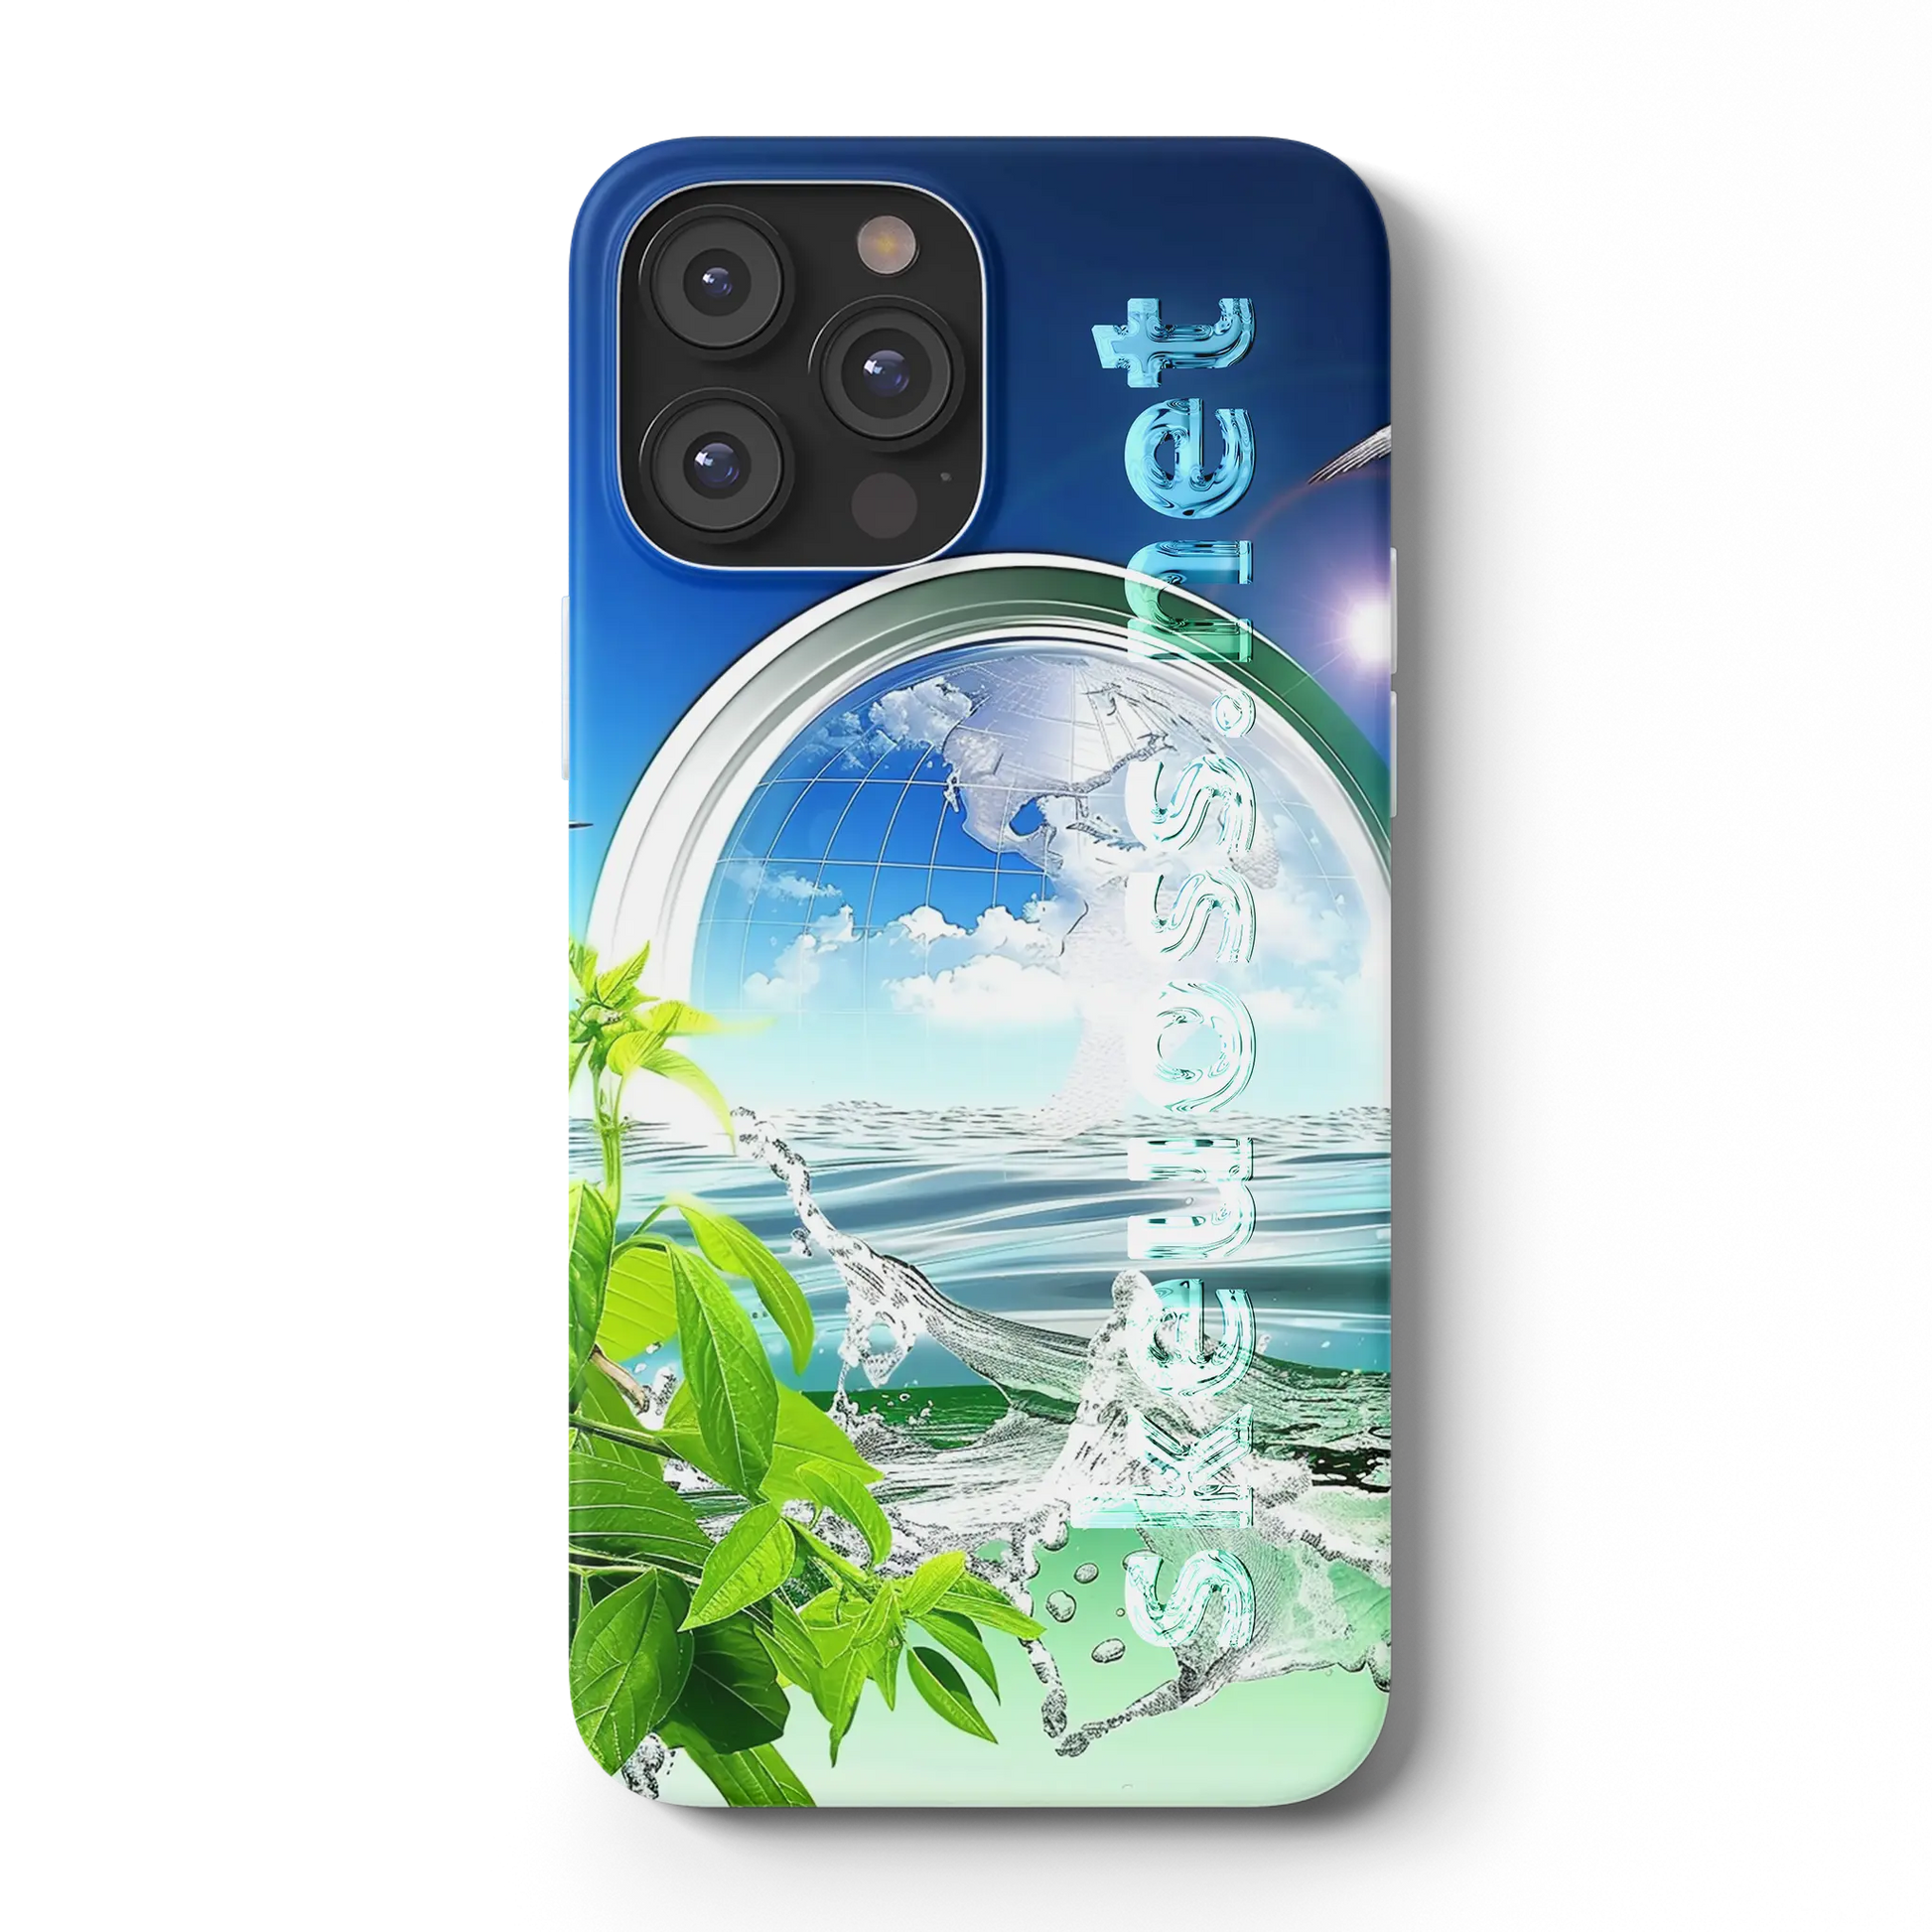 Frutiger Aero iPhone case - Design 438